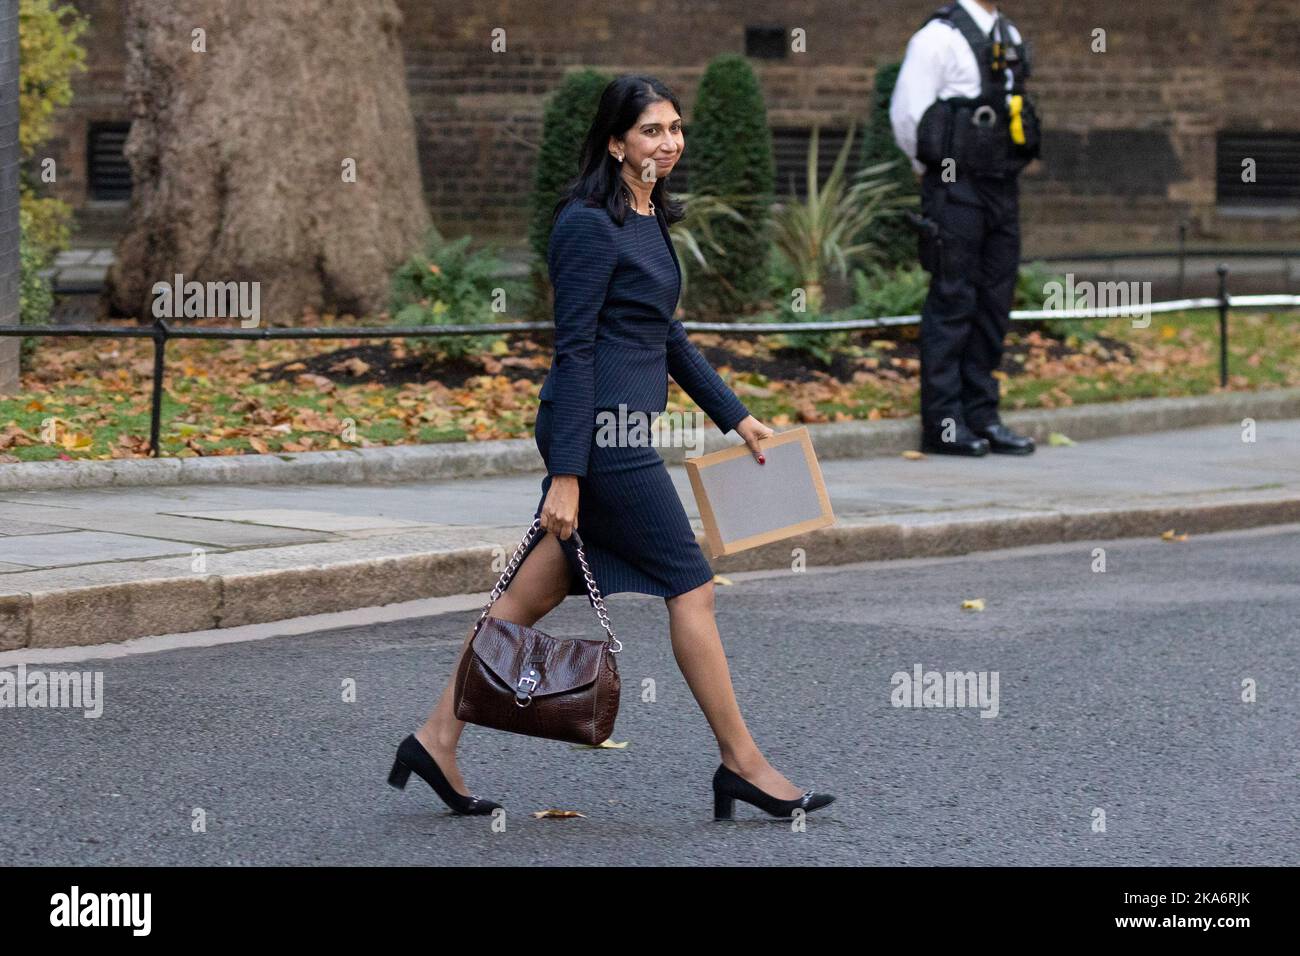 Suella Braverman quitte Downing Street cet après-midi alors que le Premier ministre Rishi Sunak nomme son nouveau cabinet. Photo prise le 25th Oct Banque D'Images